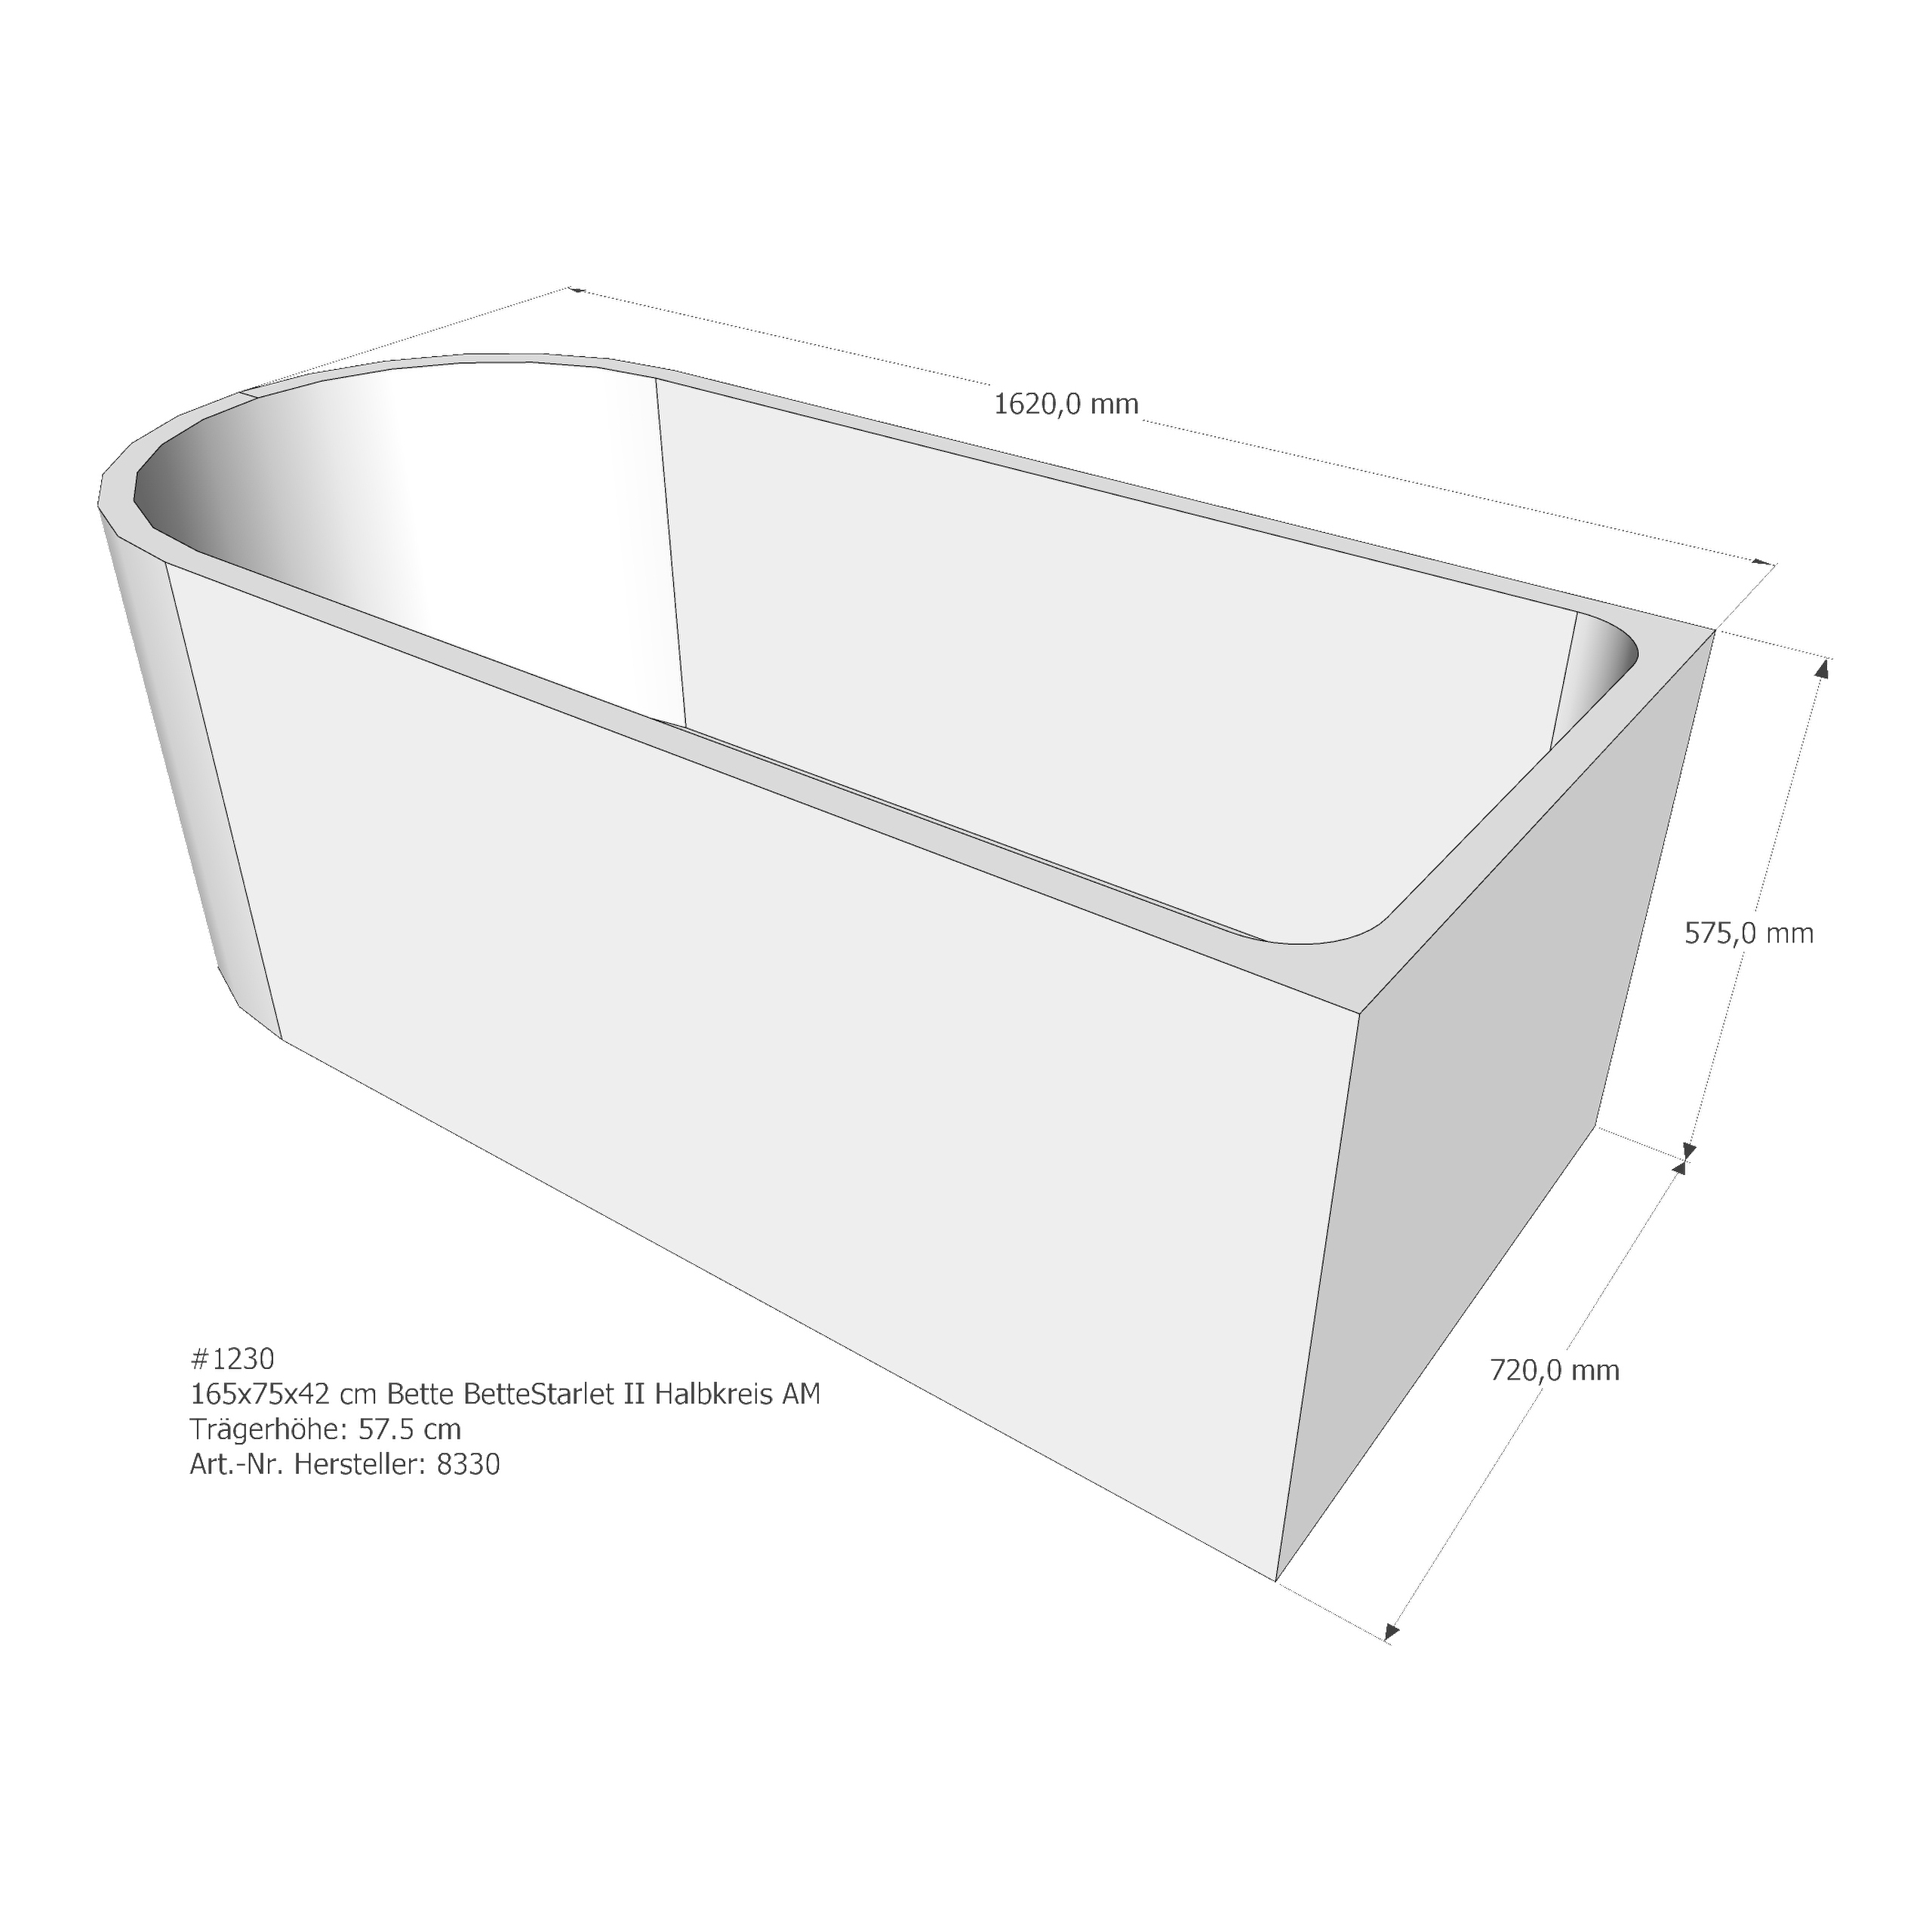 Badewannenträger für Bette BetteStarlet II 165 × 75 × 42 cm